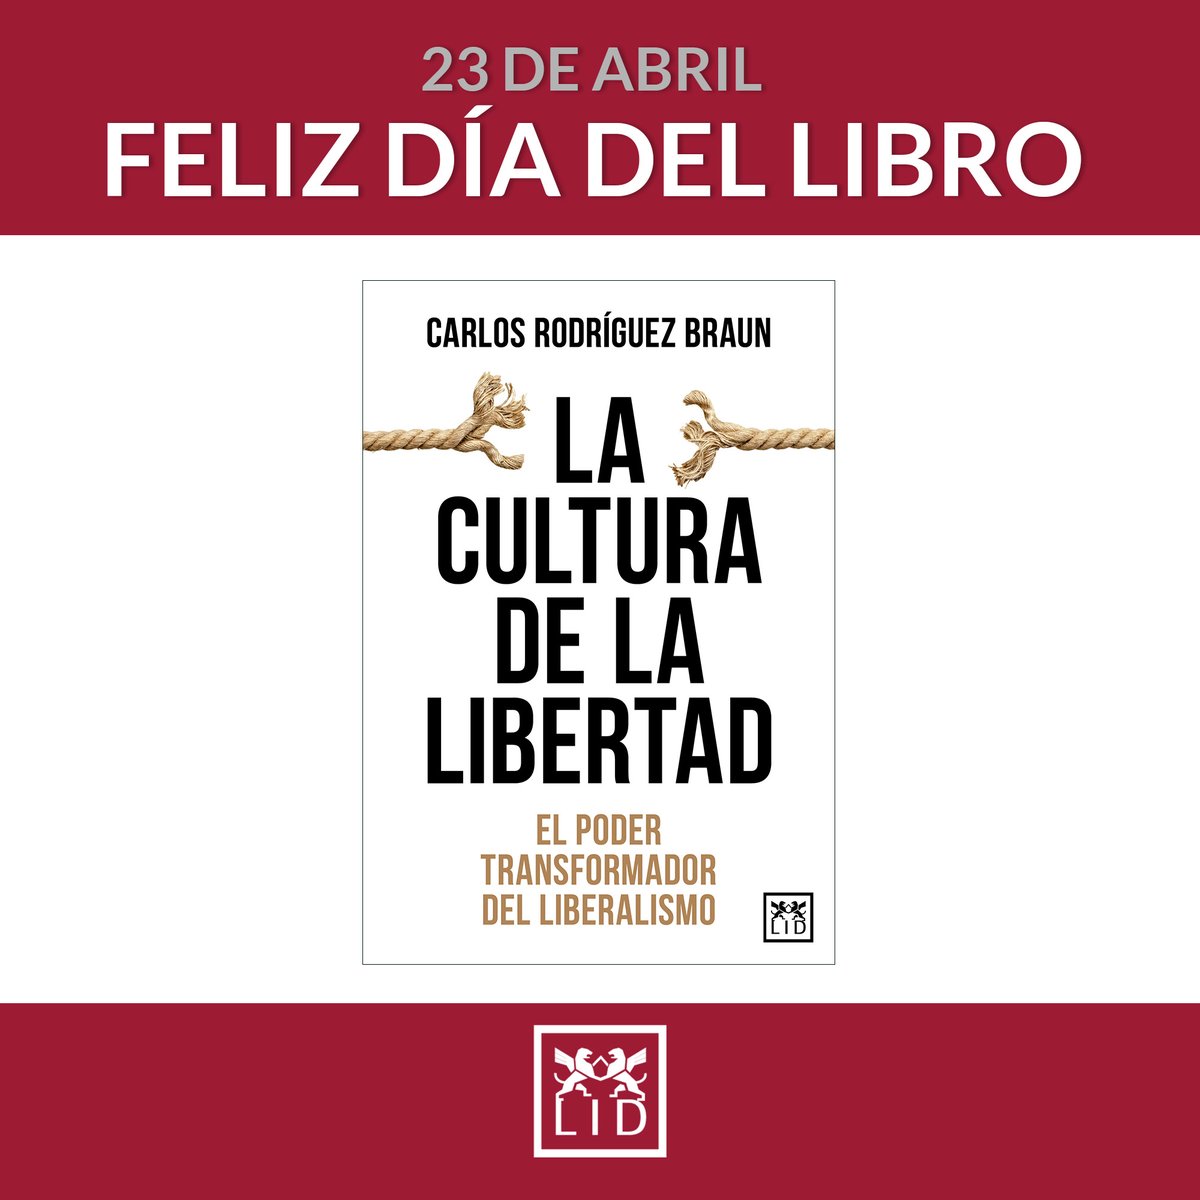 ¡Feliz #DíadelLibro con grandes #lecturas! Descubre el poder transformador del #liberalismo con el nuevo #libro de @rodriguezbraun #LaCulturadelaLibertad 👇 lidlibros.com/fichalibro.php… @Disbook_es @AlmuzaraLibros